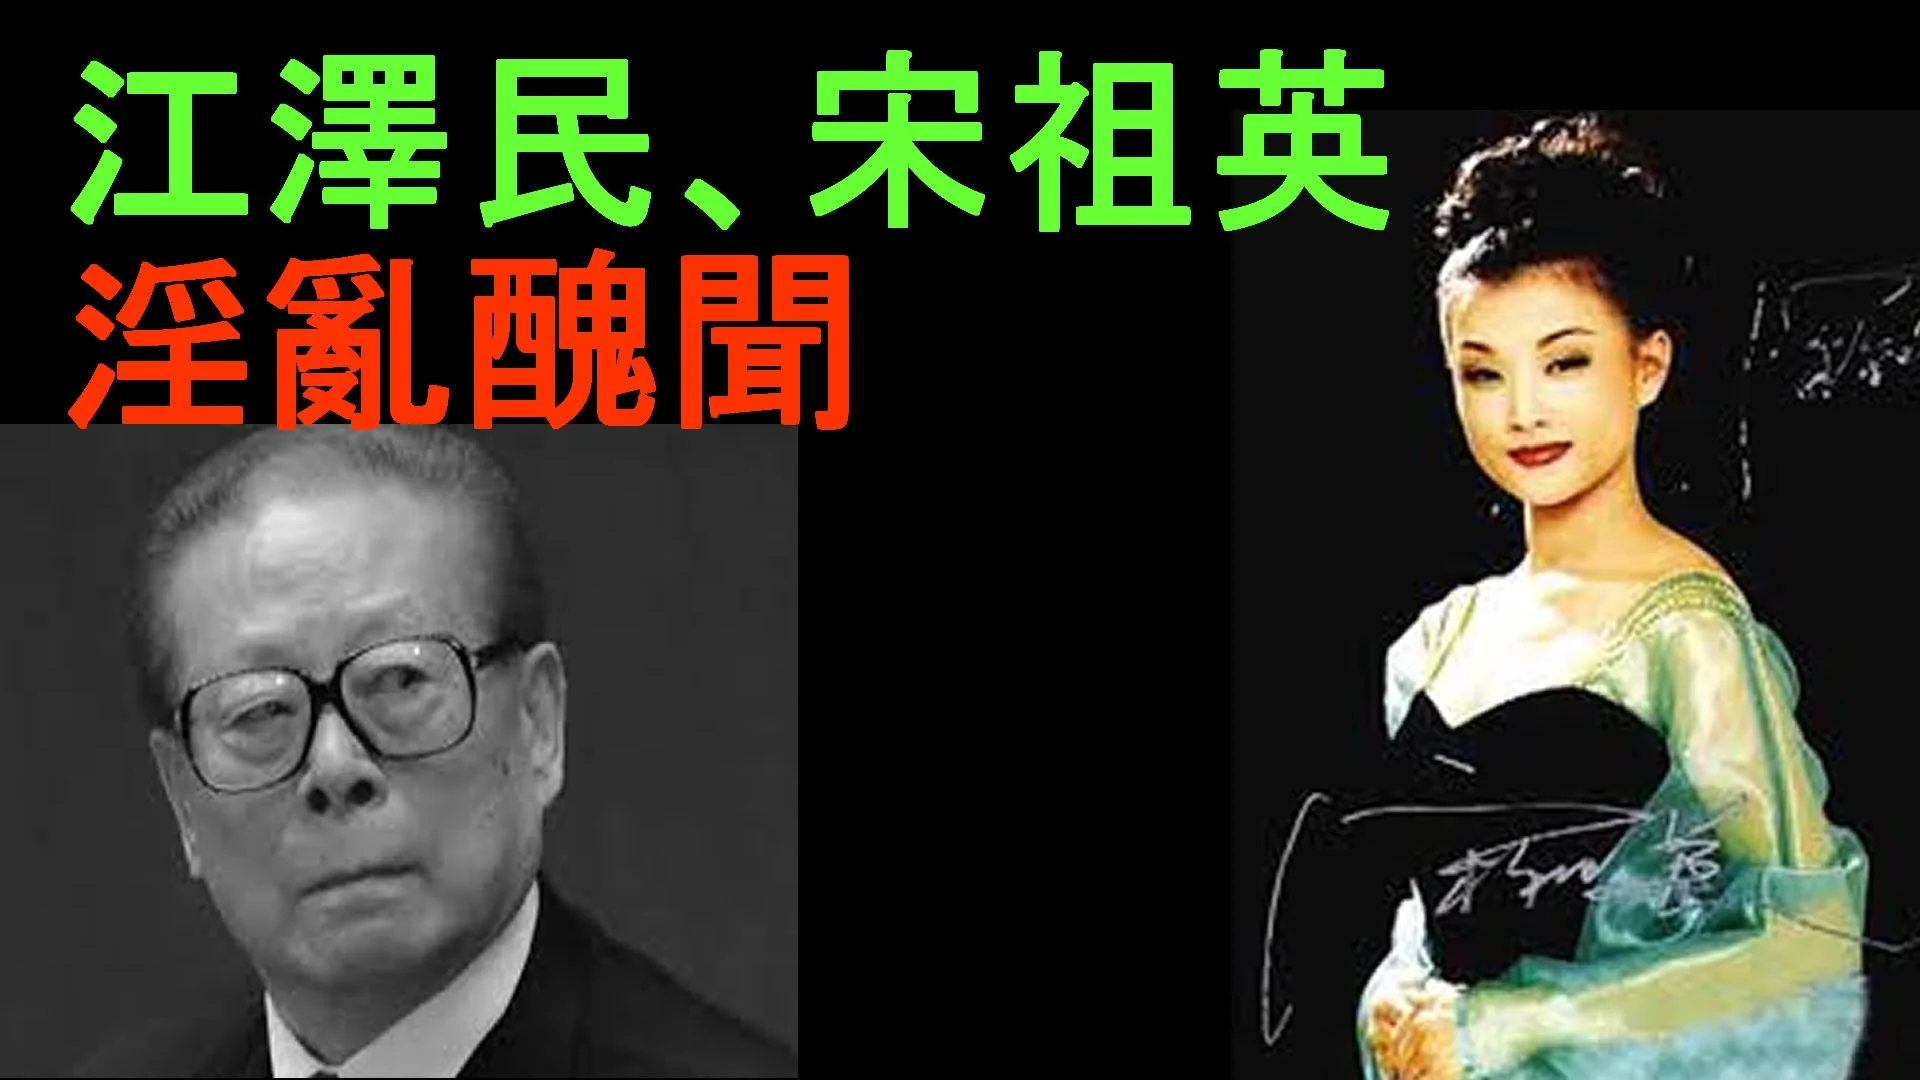 「江澤民 醜聞」的圖片搜索結果